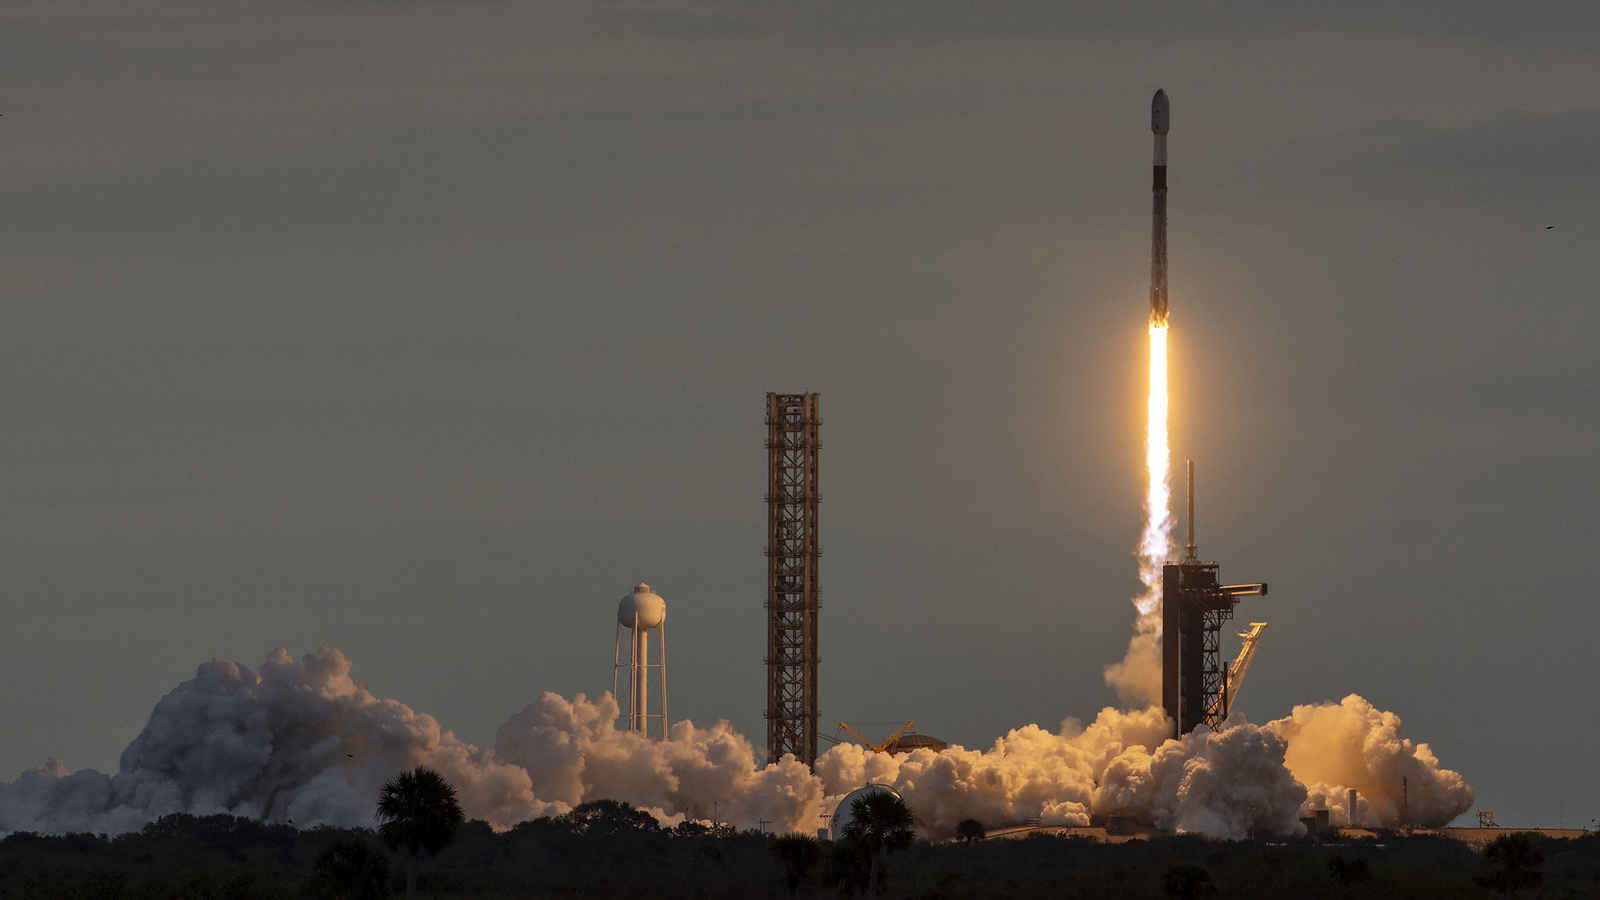 roket spacex falcon 9 hitam-putih diluncurkan ke langit kelabu